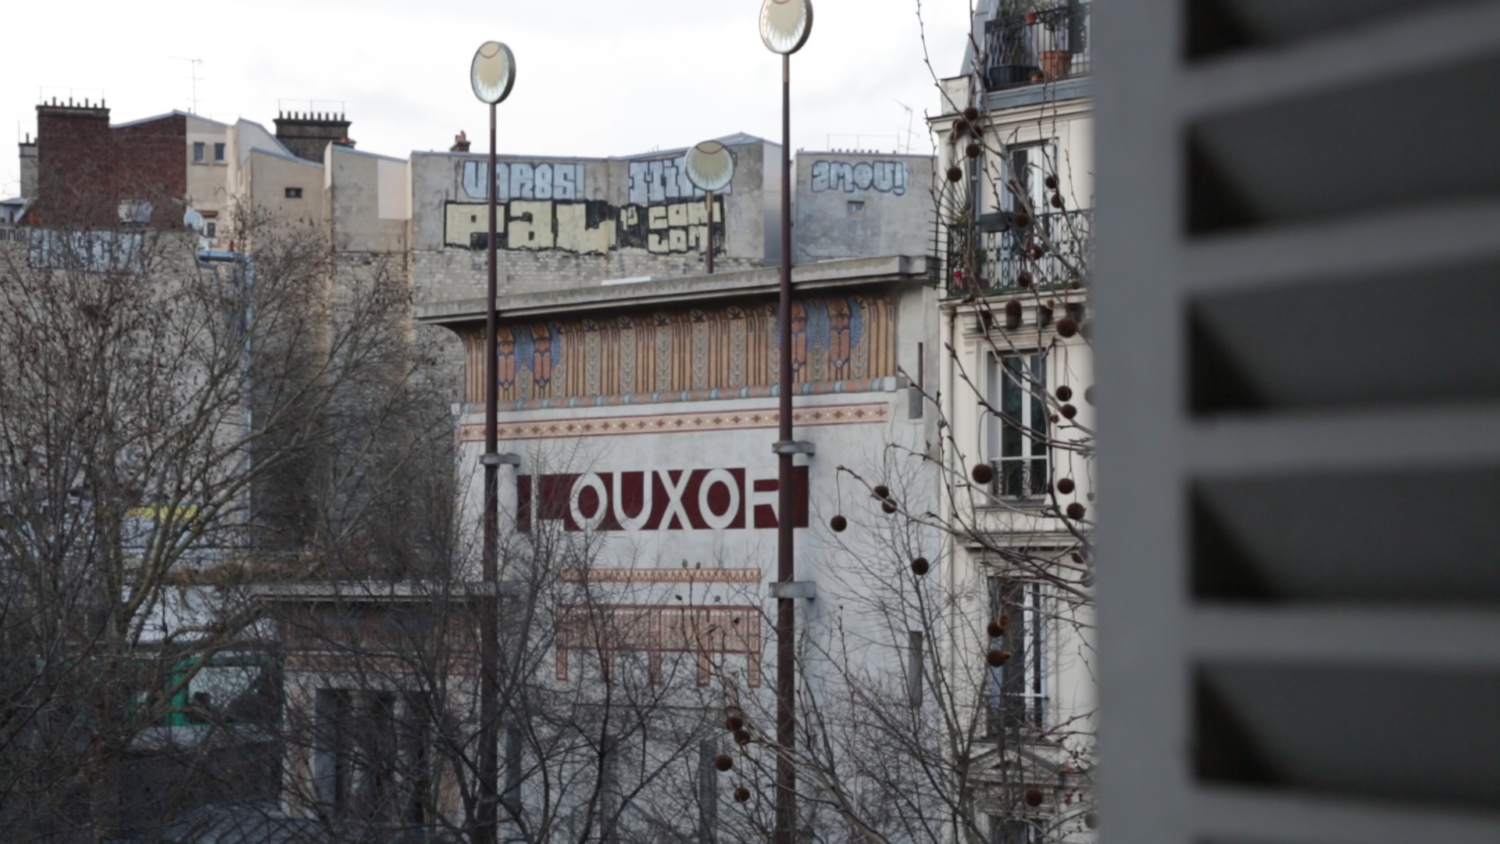 Videoarbeit von Julian Volz, Gebäude mit "Mithly" Graffiti.